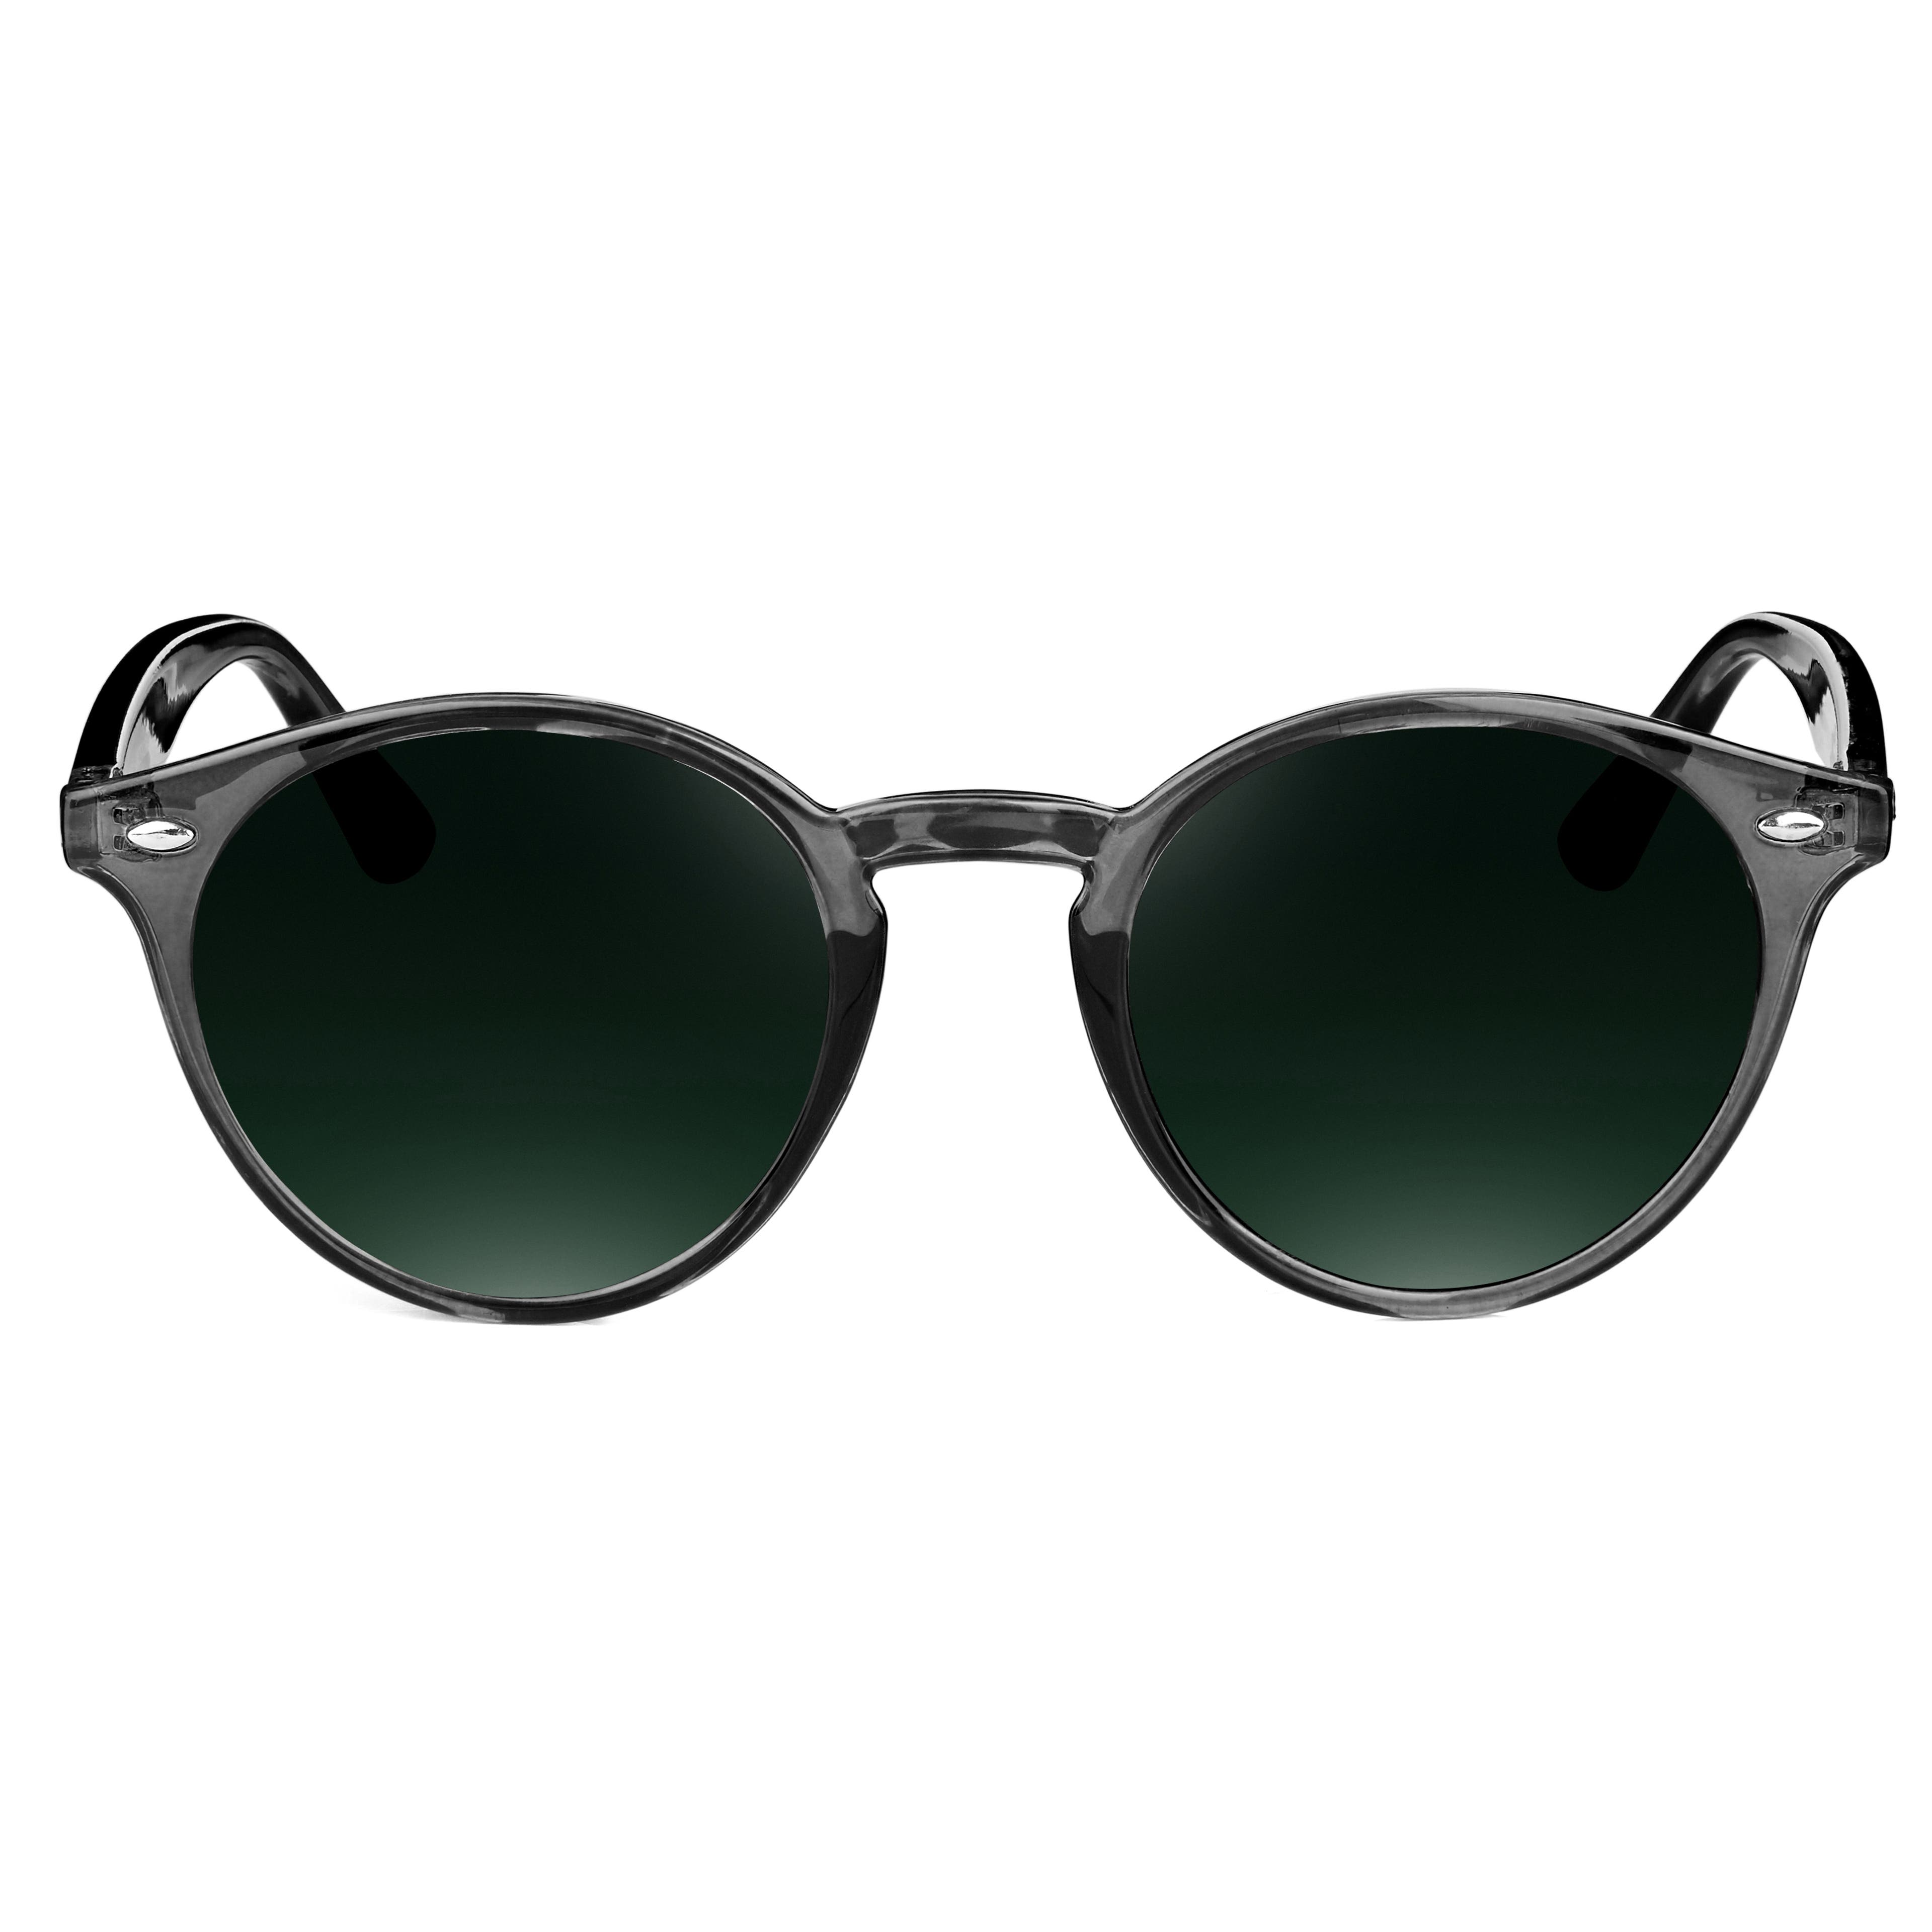 Sluneční brýle Wally Wade průhledné šedé obroučky a zelené čočky